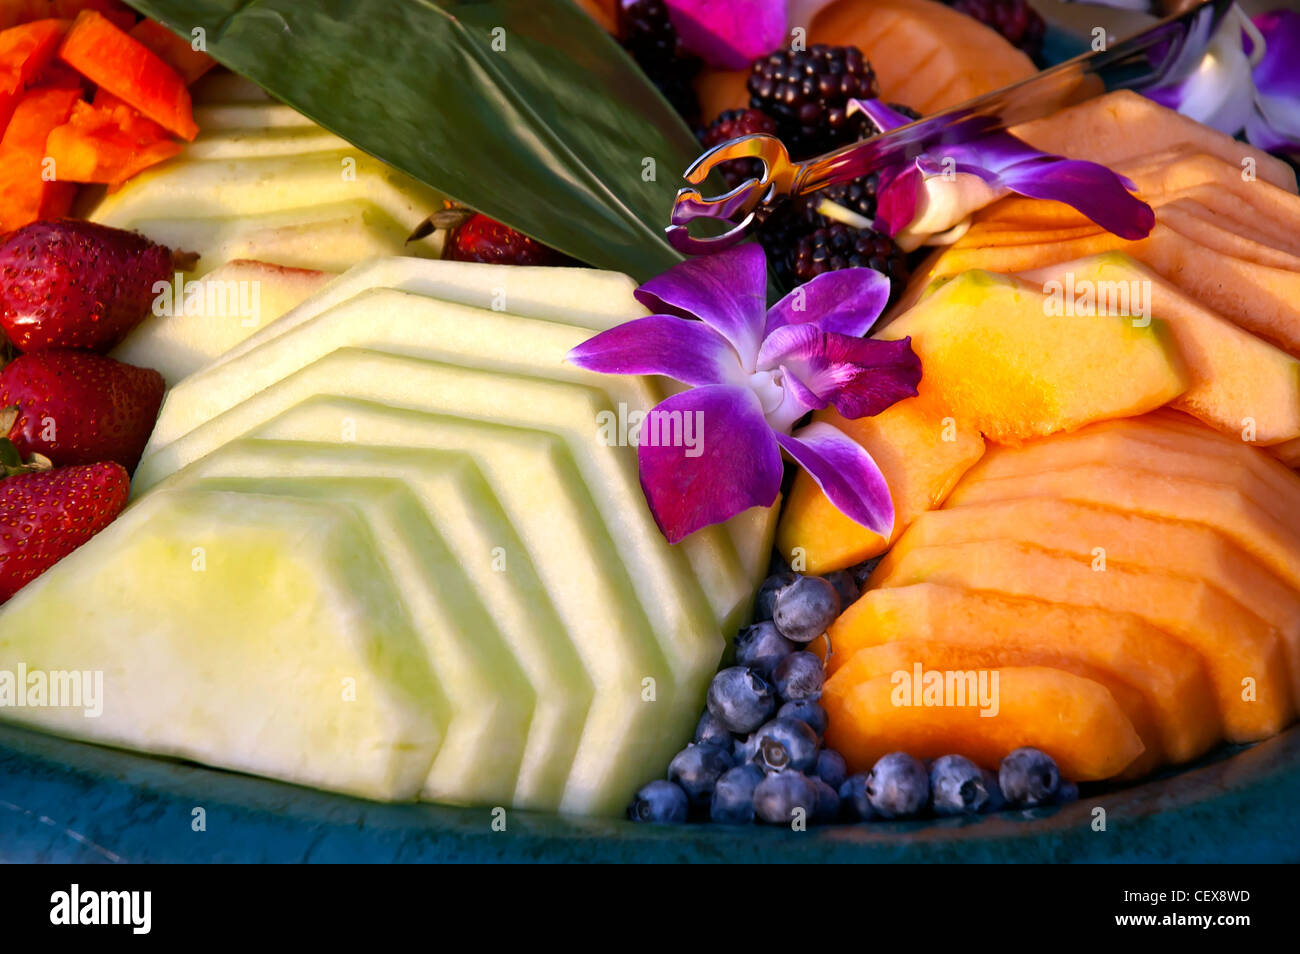 Plateau de fruits tropicaux de saison et différentes couleurs lumineuses décorées avec des fleurs orchidée pourpre Banque D'Images